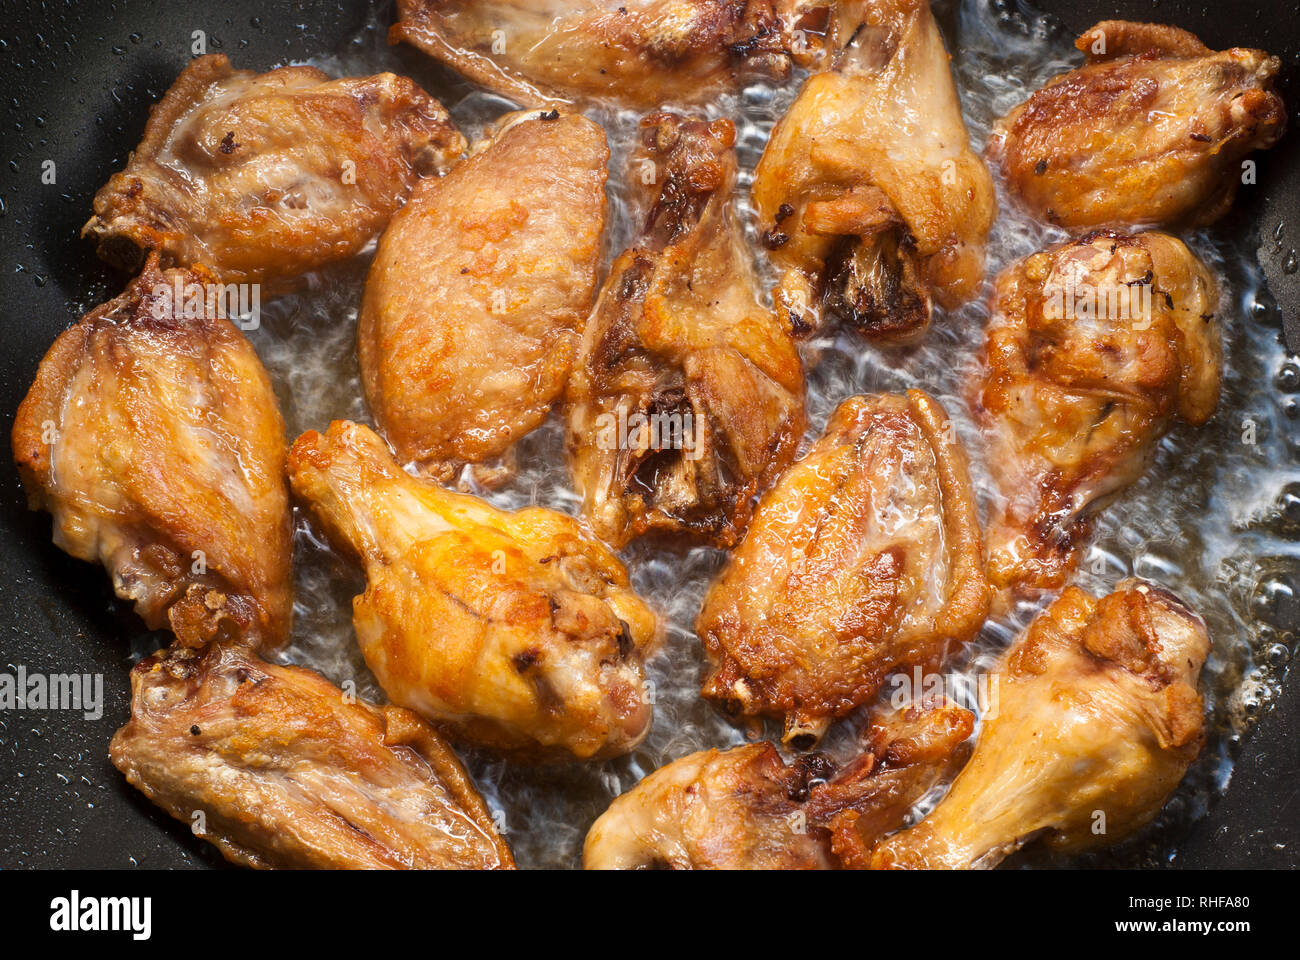 Kochen Fried Chicken Wings in der Pfanne Stockfotografie - Alamy